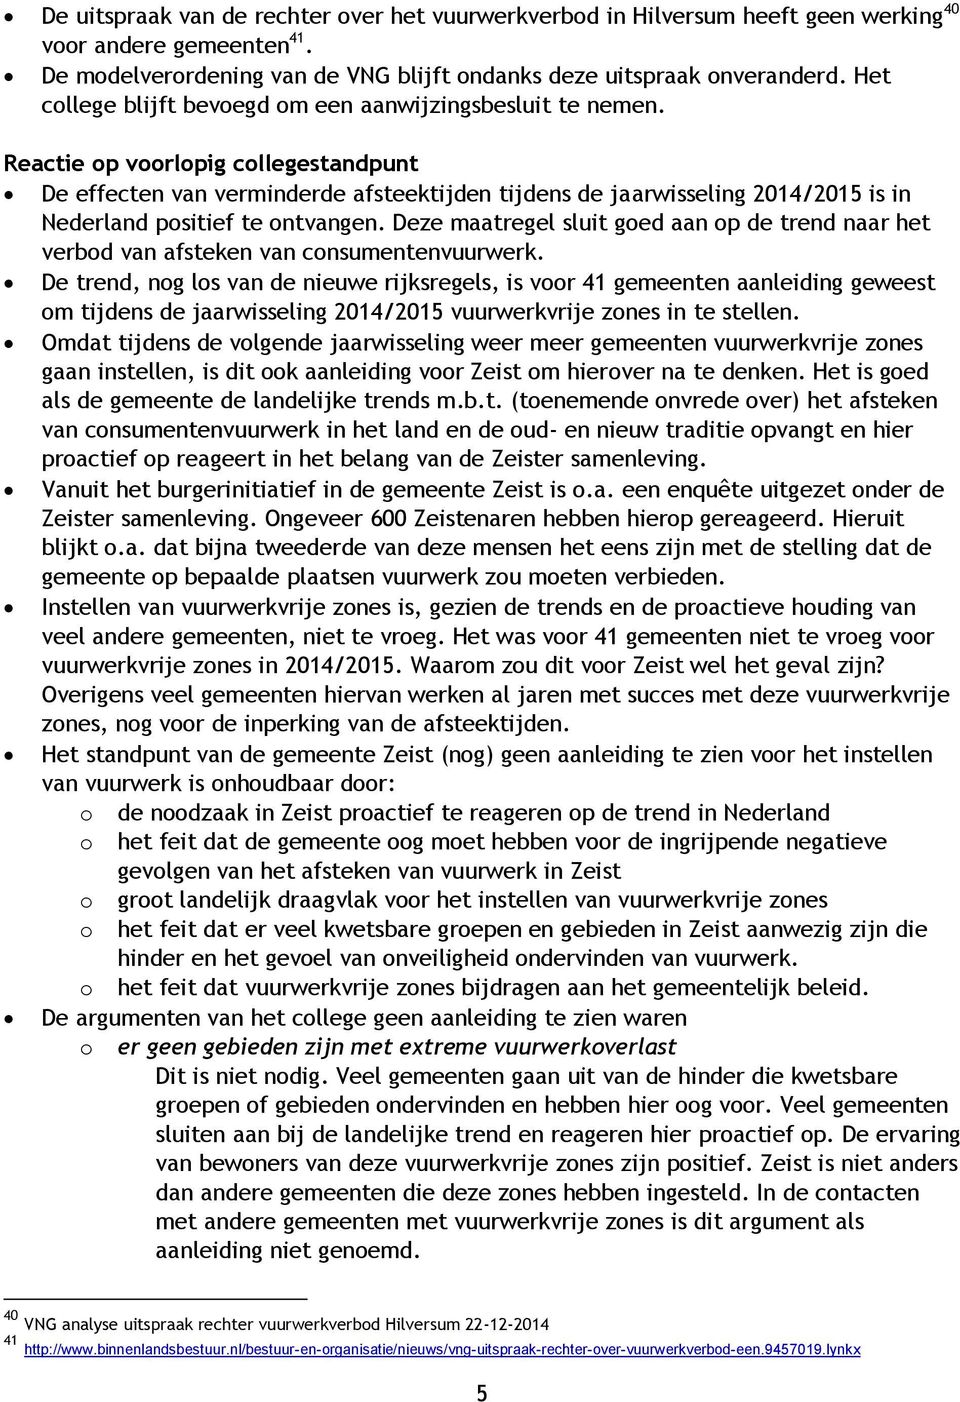 Reactie op voorlopig collegestandpunt De effecten van verminderde afsteektijden tijdens de jaarwisseling 2014/2015 is in Nederland positief te ontvangen.